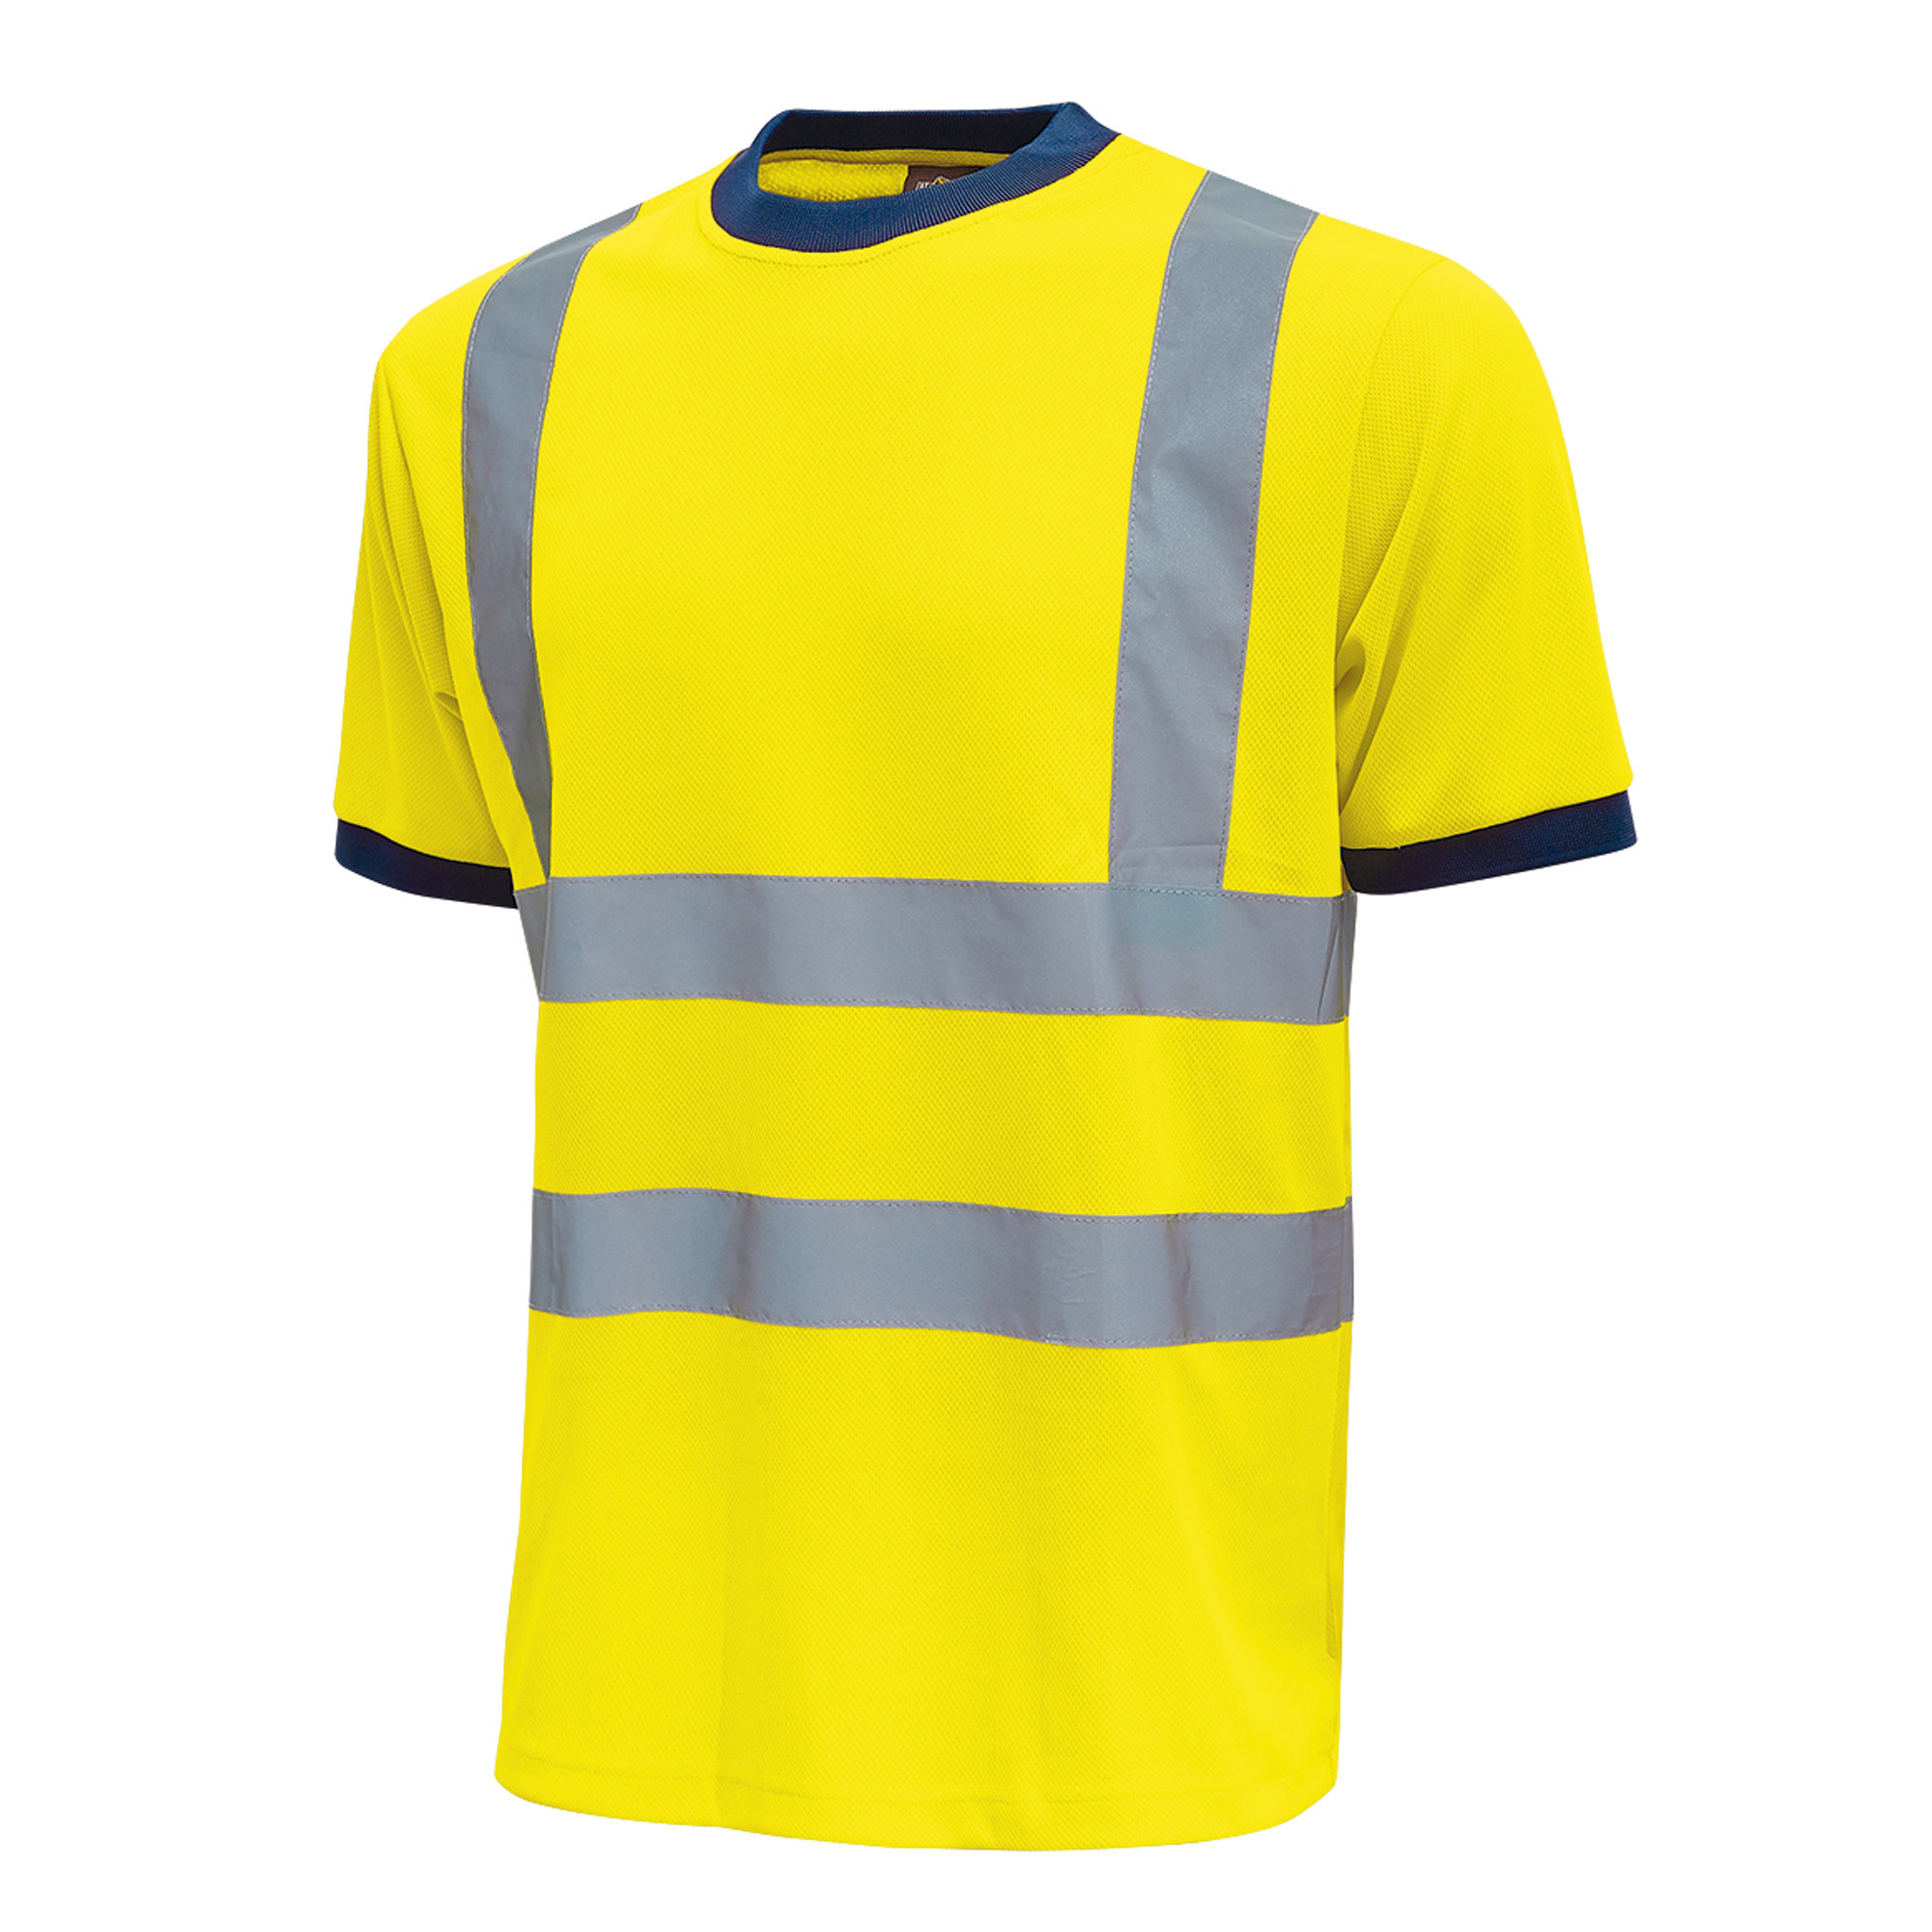 T-shirt alta visibilitA' Glitter - taglia XXL - giallo fluo - U-Power - conf. 3 pezzi